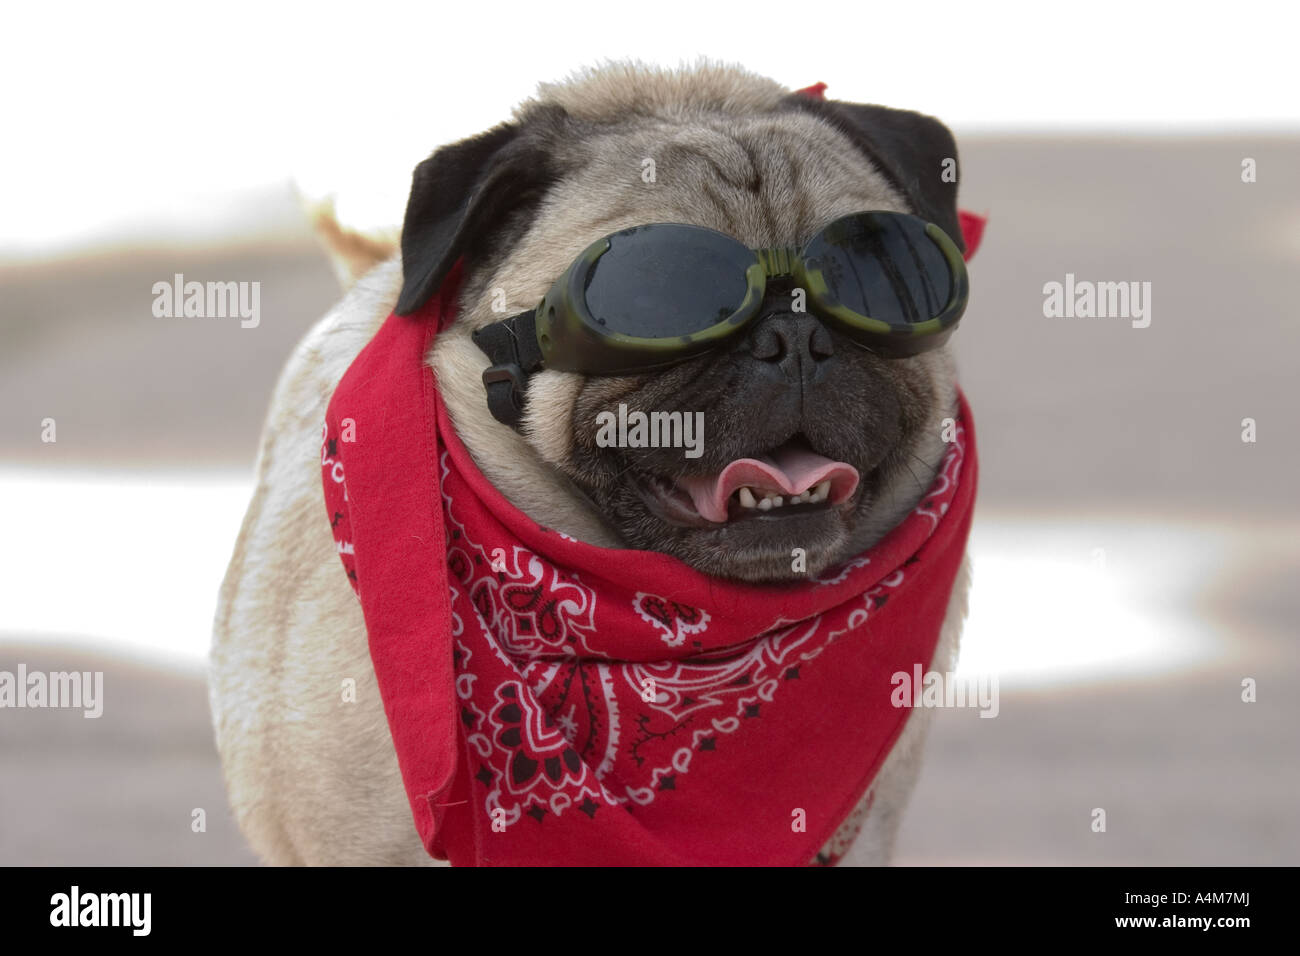 pug dog with glasses